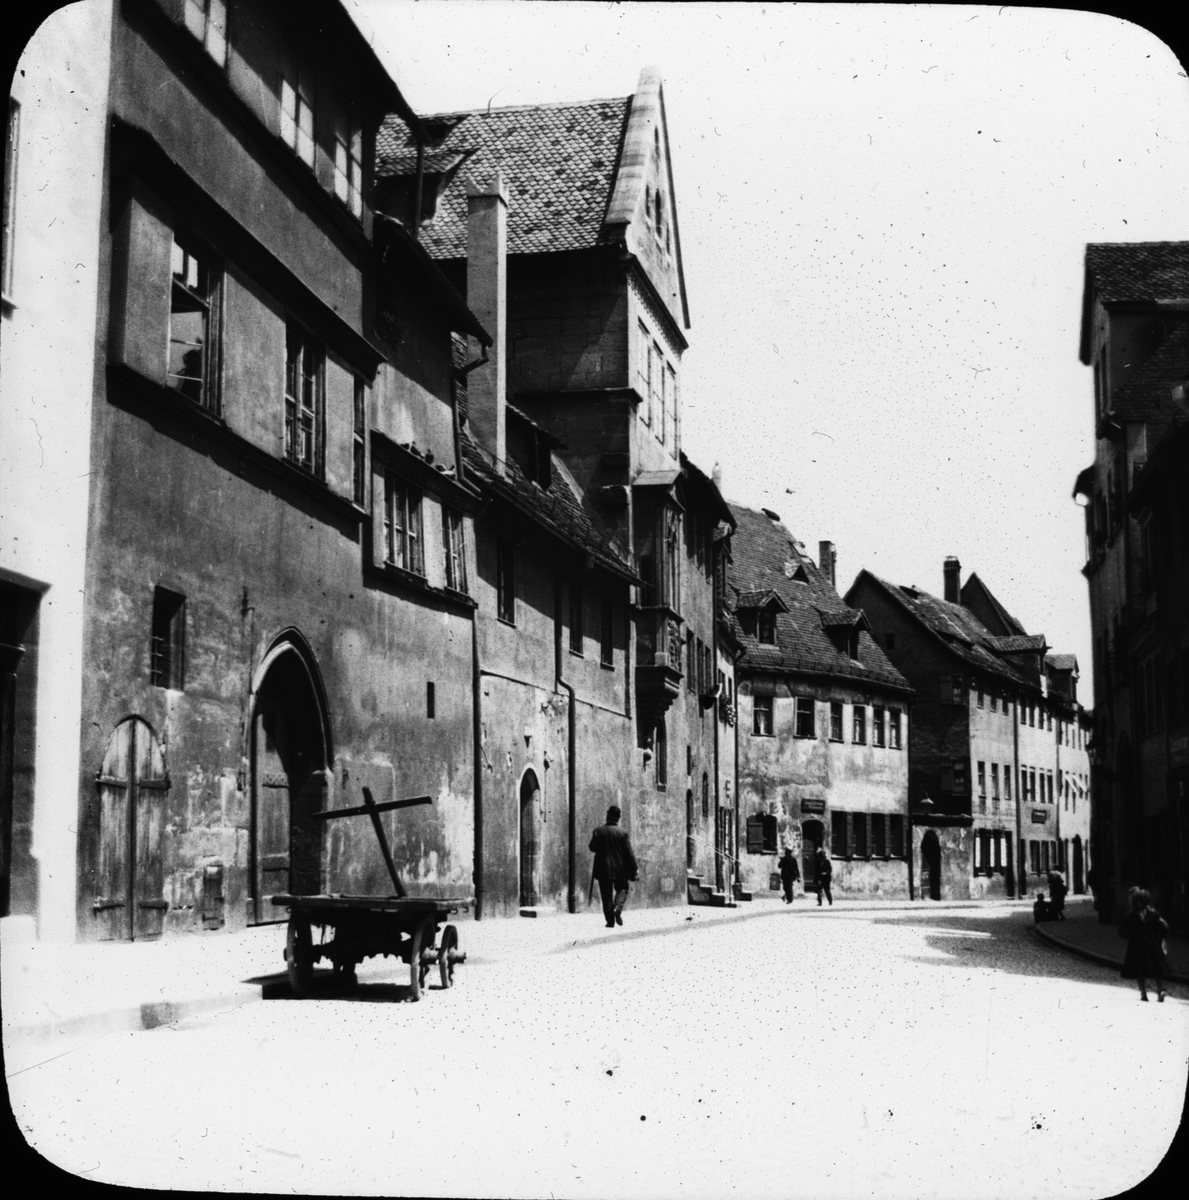 Skioptikonbild av Hirschelgasse med Tucherschlösschen till vänster, Nürnberg.

Bilden har förvarats i kartong märkt: Vårresan 1910. Nürnberg 9. XX.